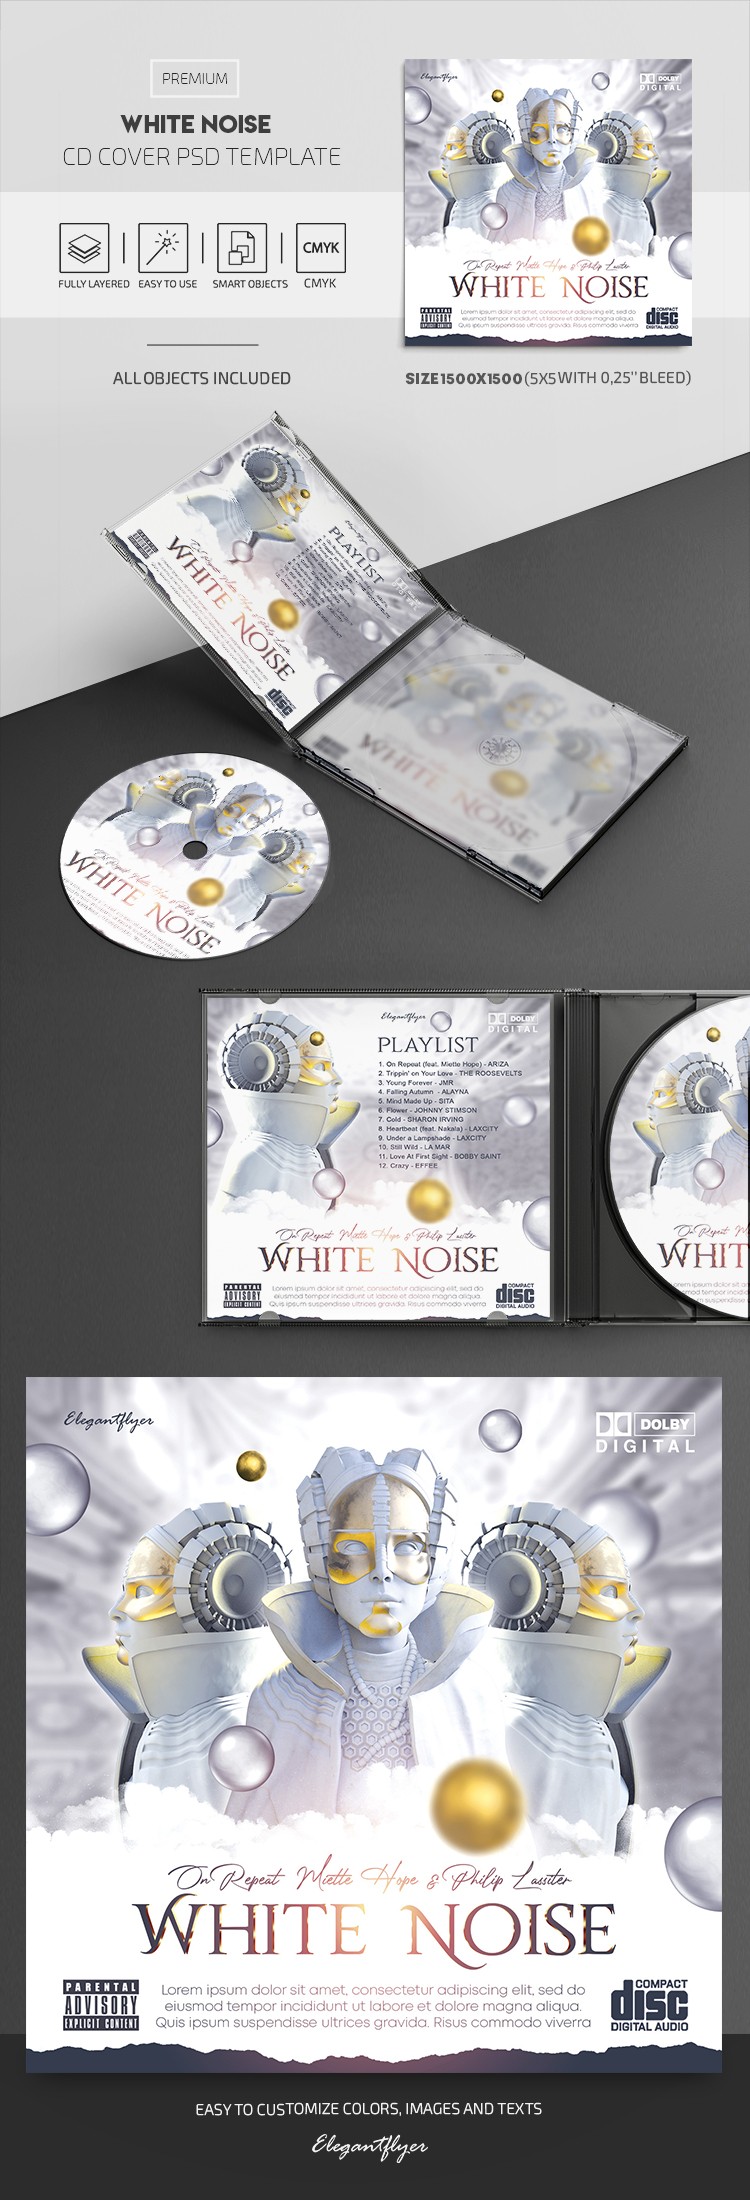 Okładka płyty White Noise by ElegantFlyer